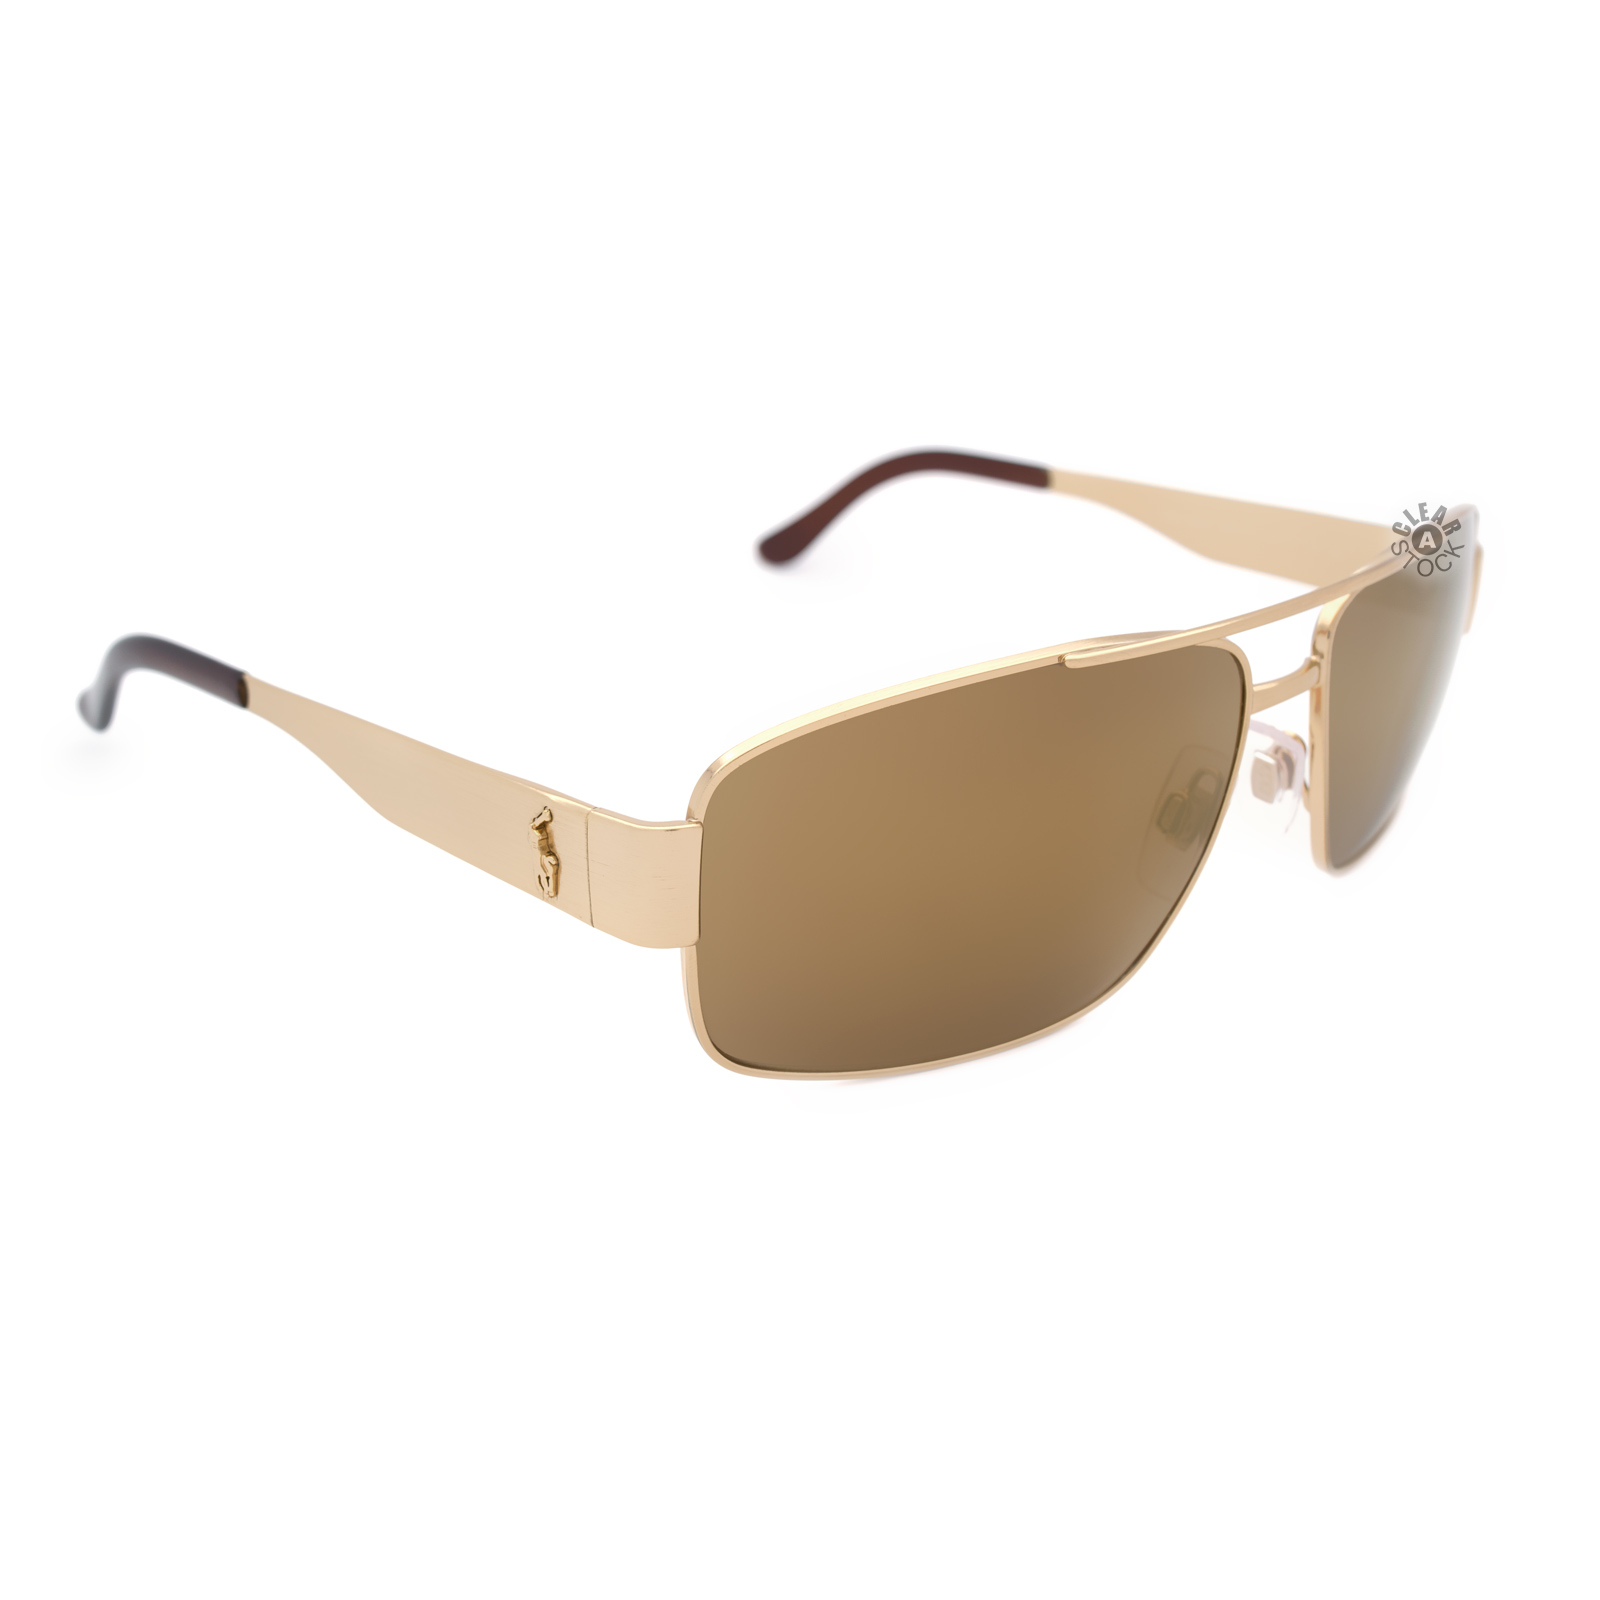 Ralph Lauren Polo 3054 9004/7D Sunglasses